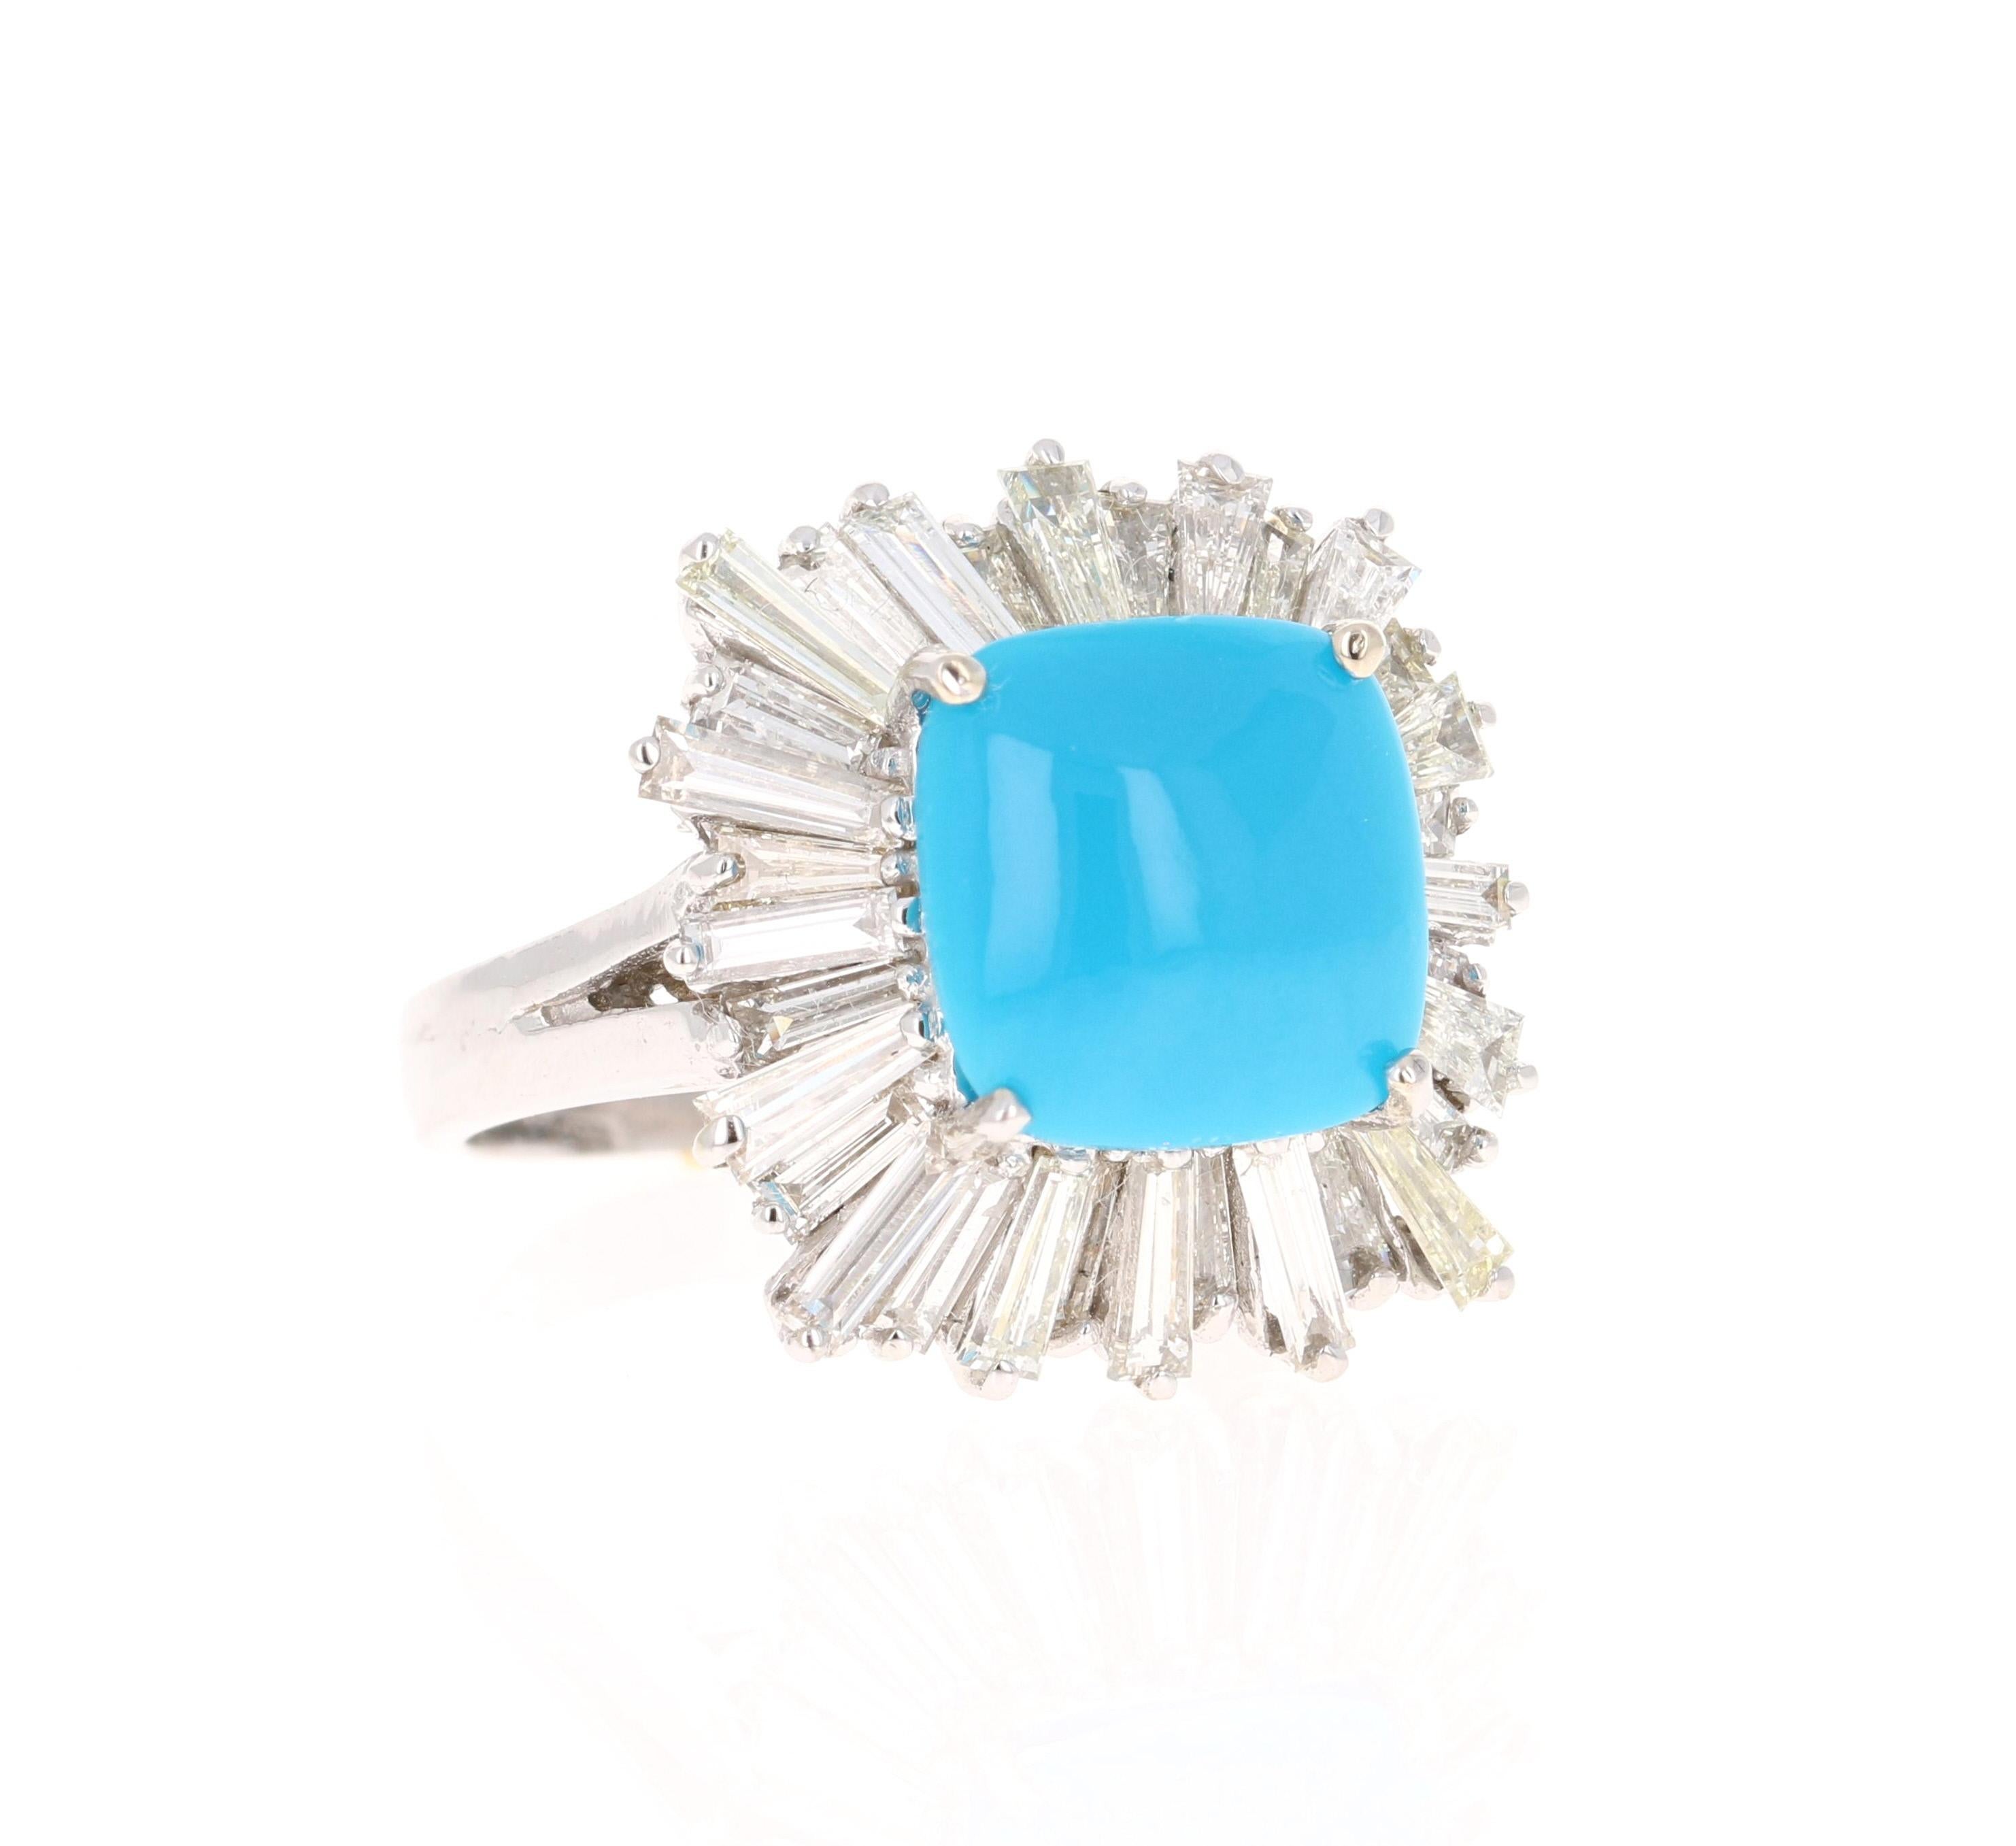 La turquoise taille coussin pèse 4,91 carats et est entourée d'un halo de diamants magnifiquement sertis. 
Il y a 32 diamants taille baguette qui pèsent 2,35 carats (pureté : SI2, couleur : F).
Le poids total en carats de la bague est de 7.26